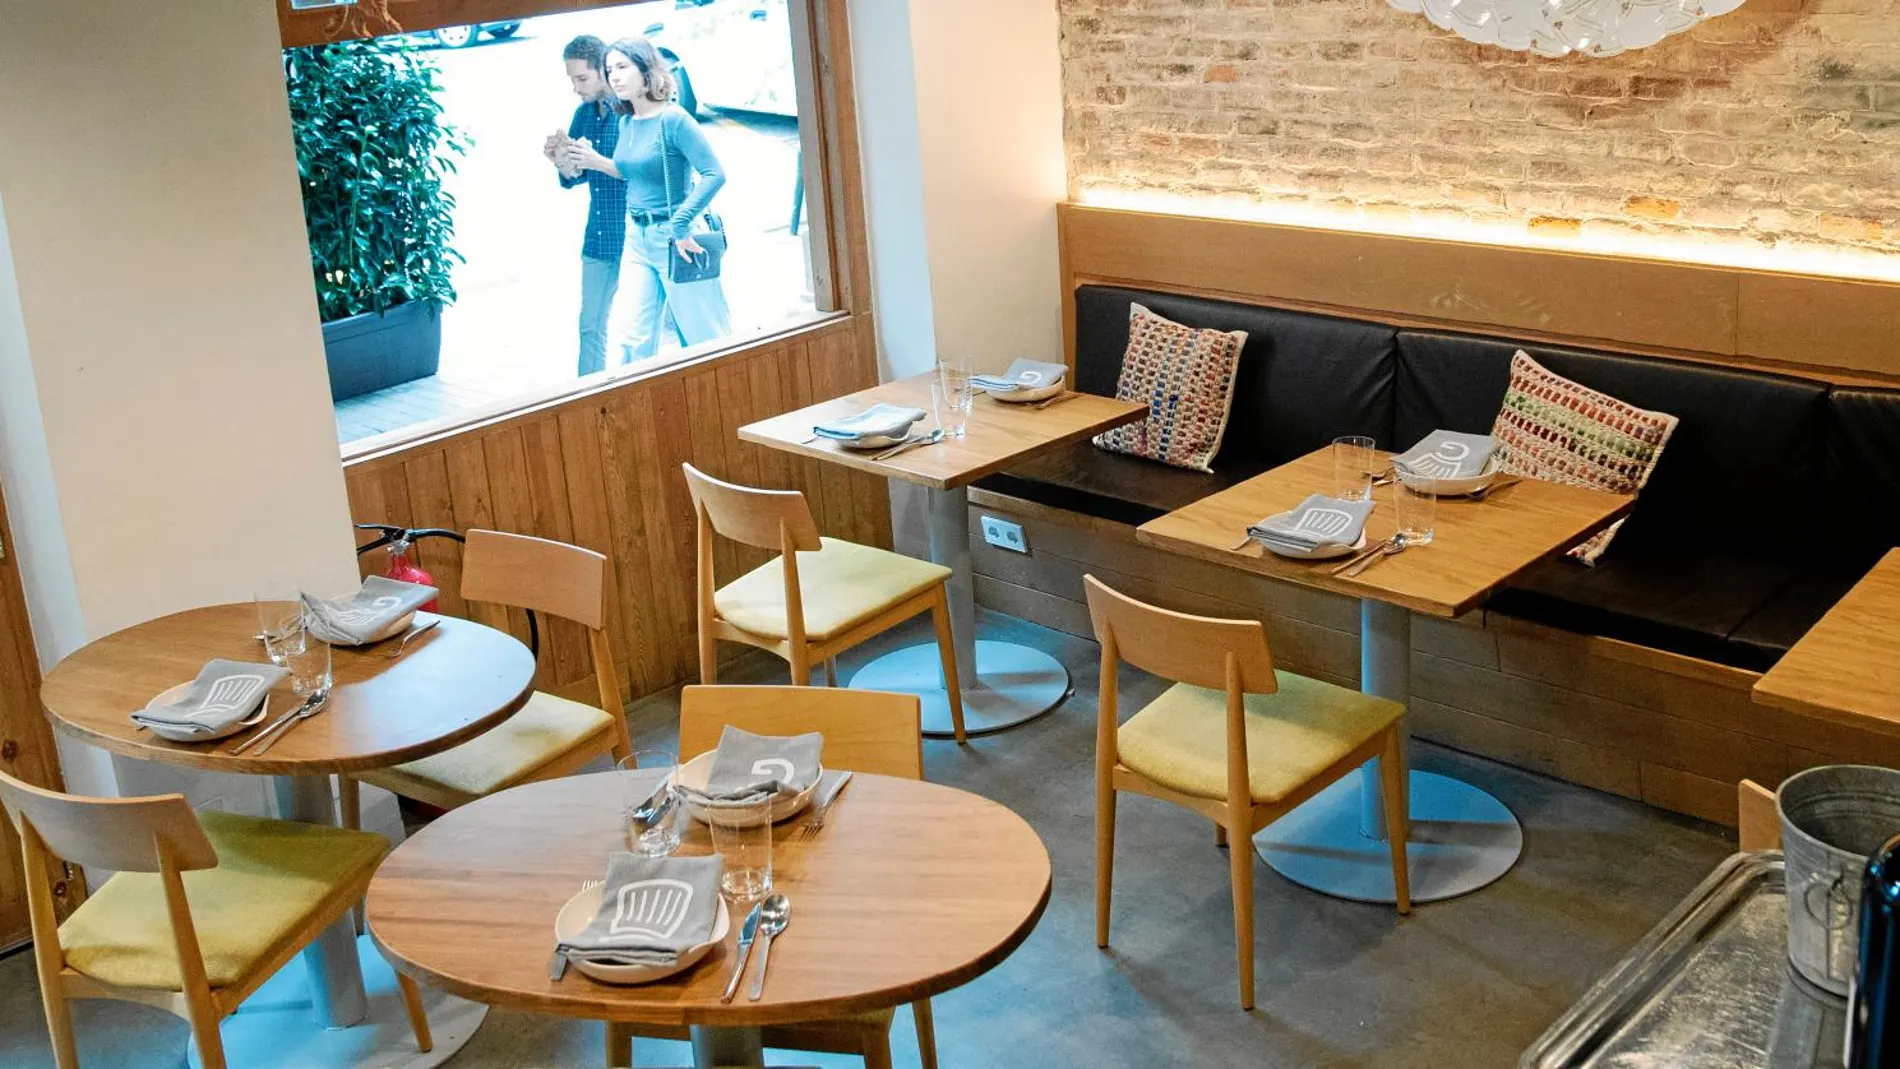 El restaurante pone especial hincapié en el cuidado de la clientela, con un ambiente familiar / Foto: Shooting